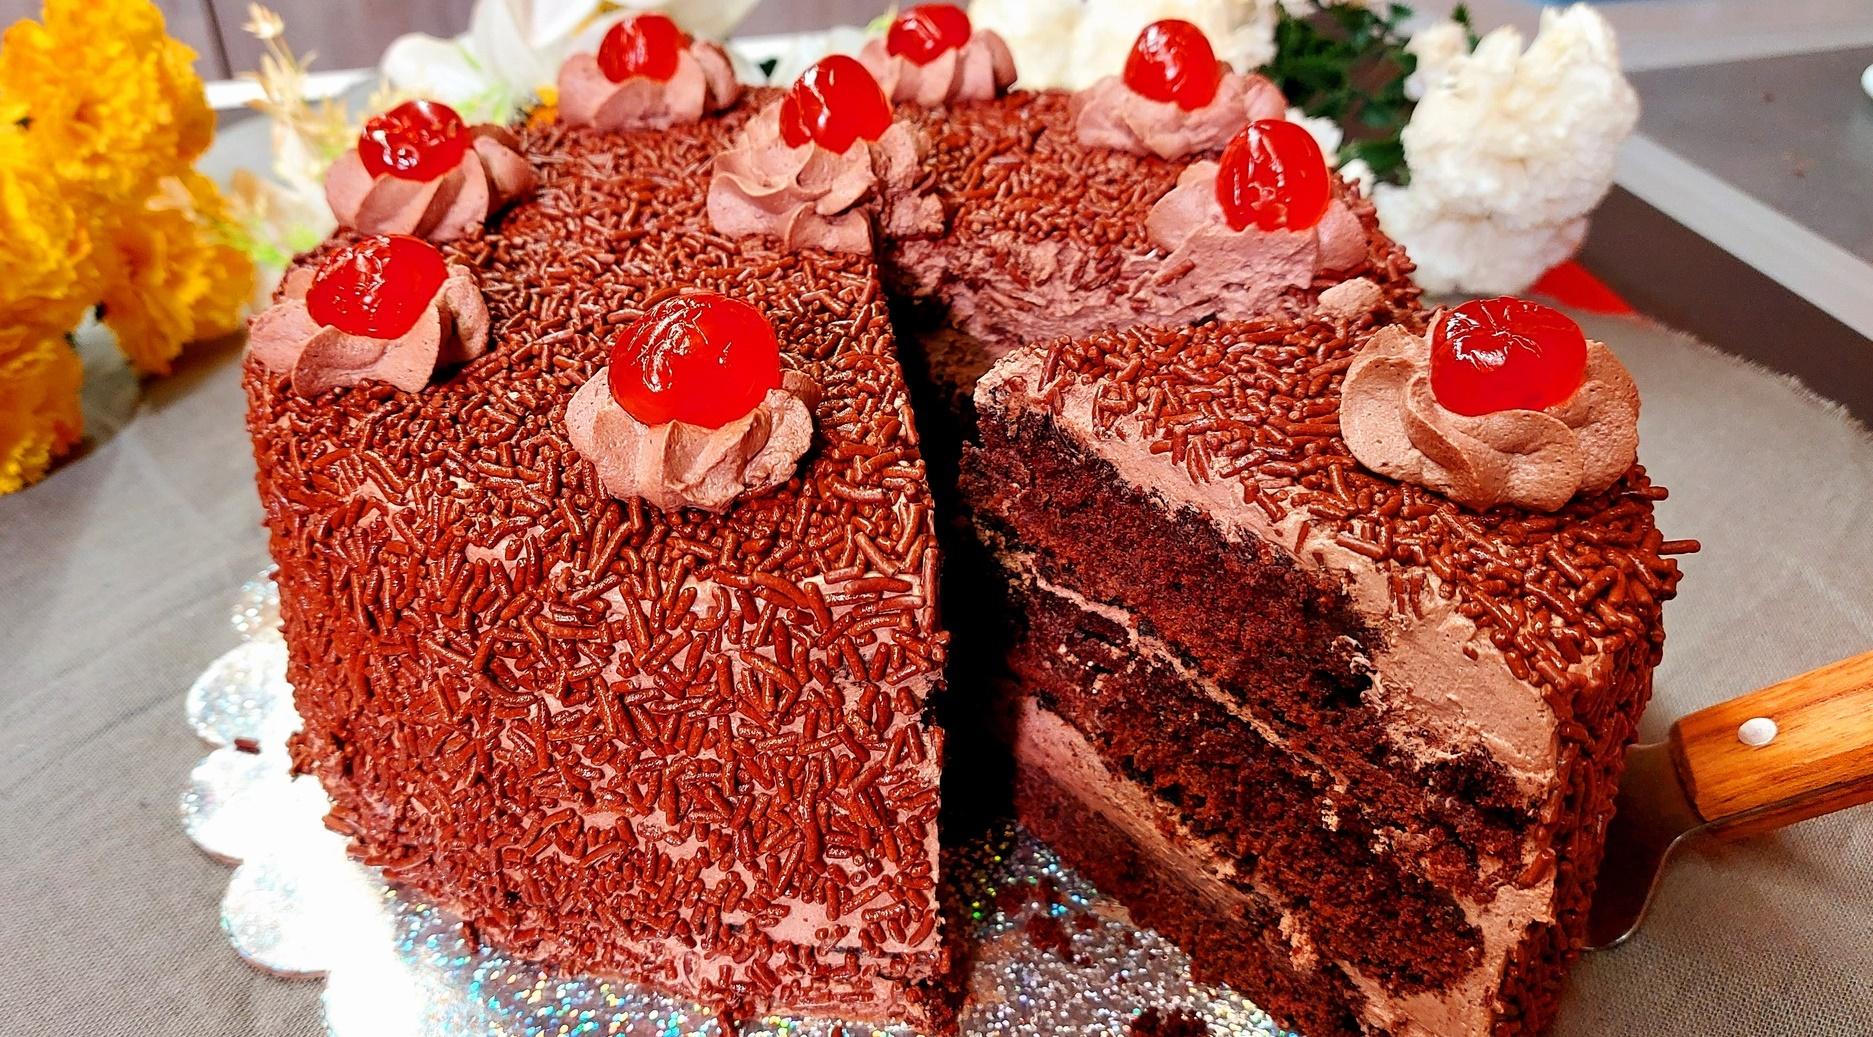 κέικ-σαν-τούρτα-με-σοκολάτα-συνταγή-